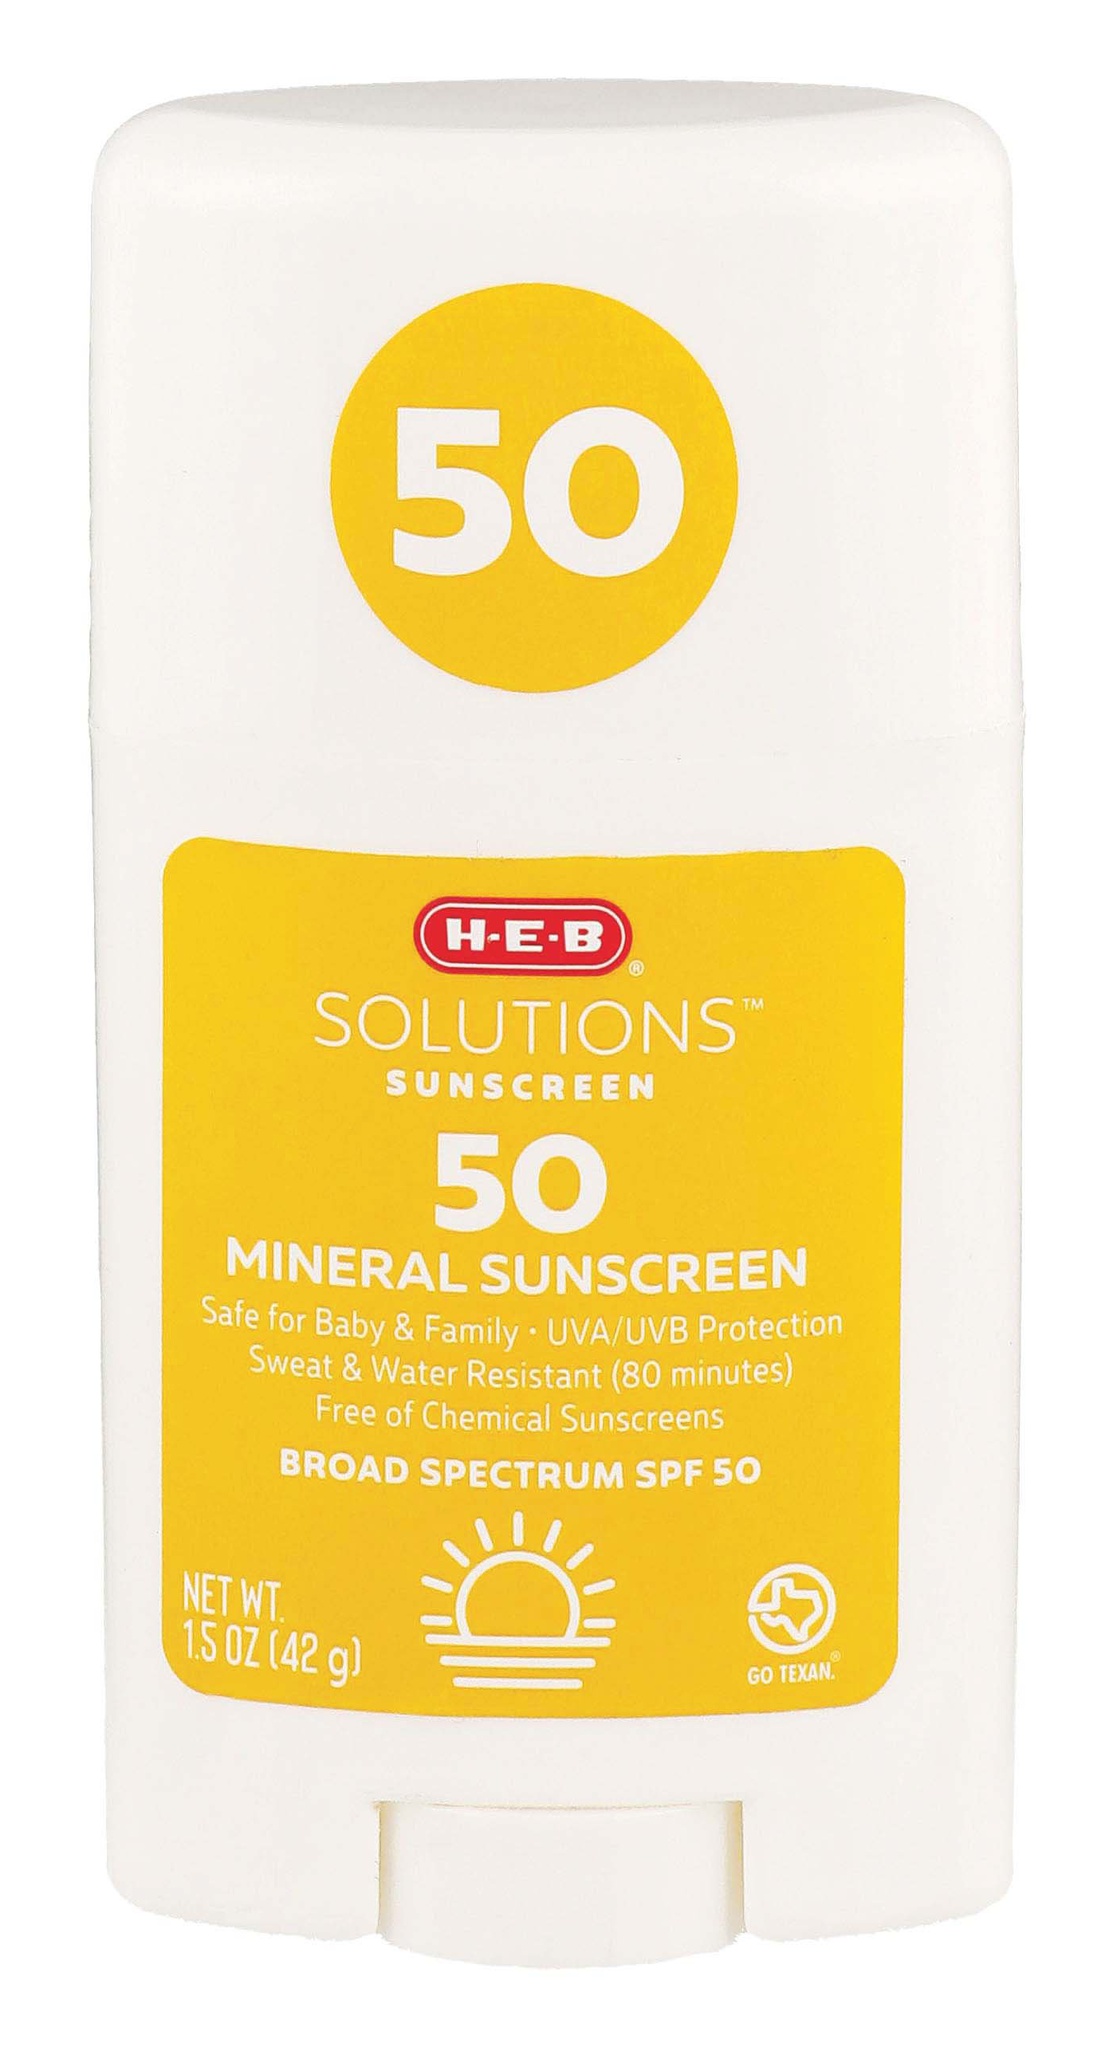 H-E-B Solutions Sunscreen SPF 50 Mineral Sunscreen